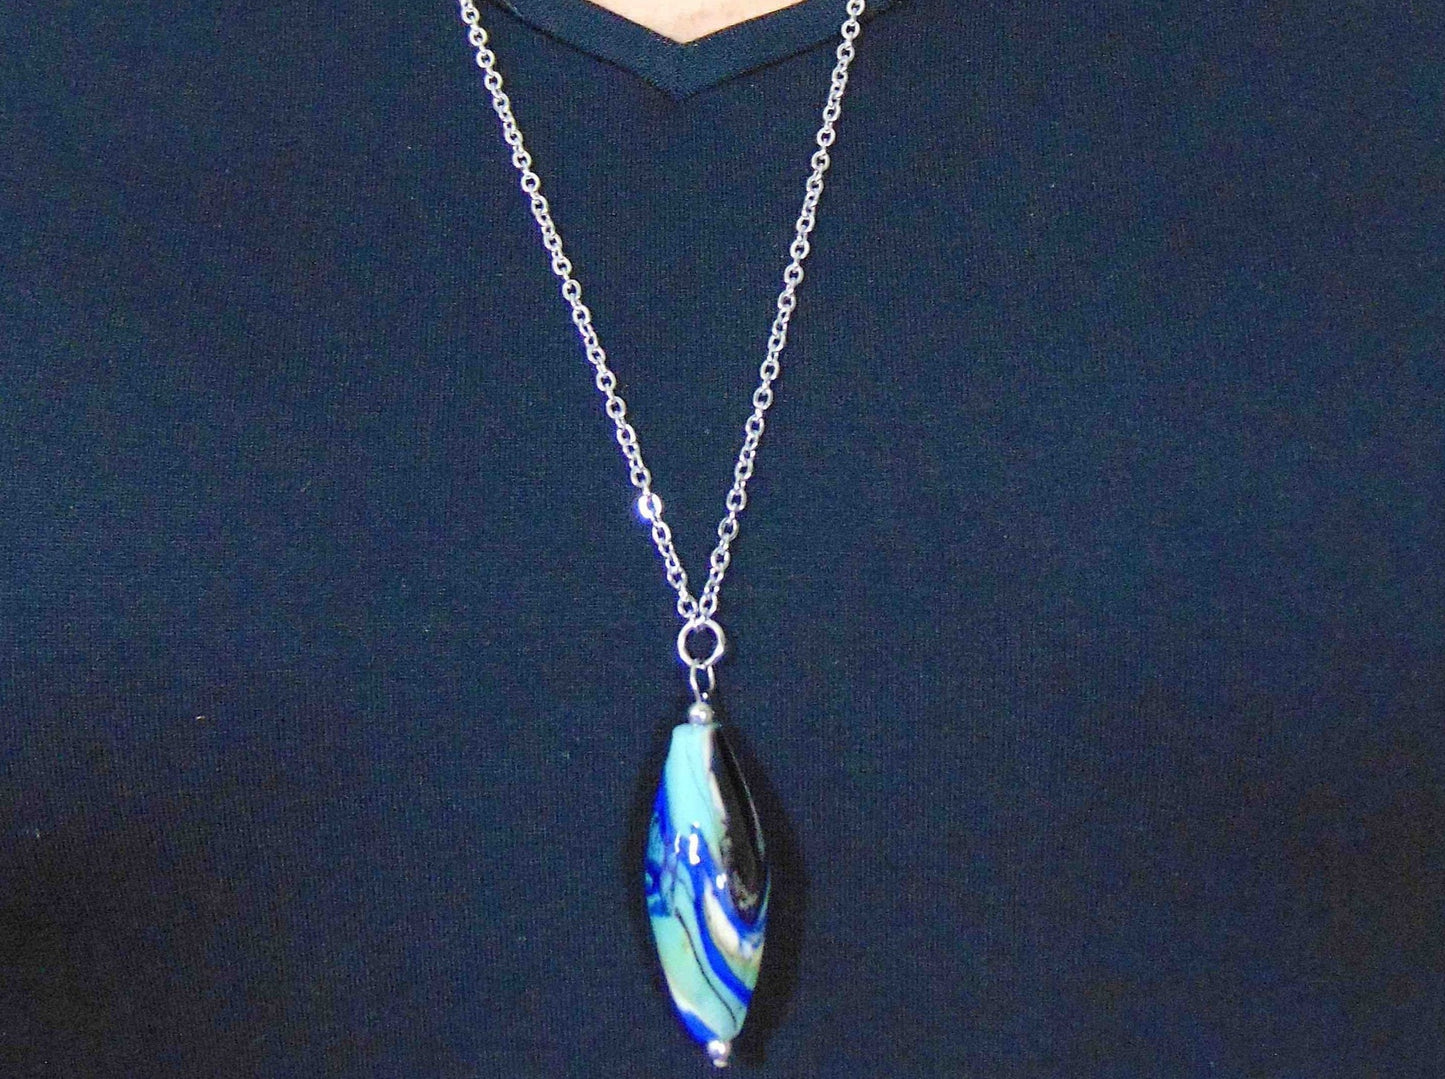 Collier 29 po cylindre pointu spiralé de verre de Murano marbré bleu foncé, vert clair, noir et blanc, chaîne acier inoxydable